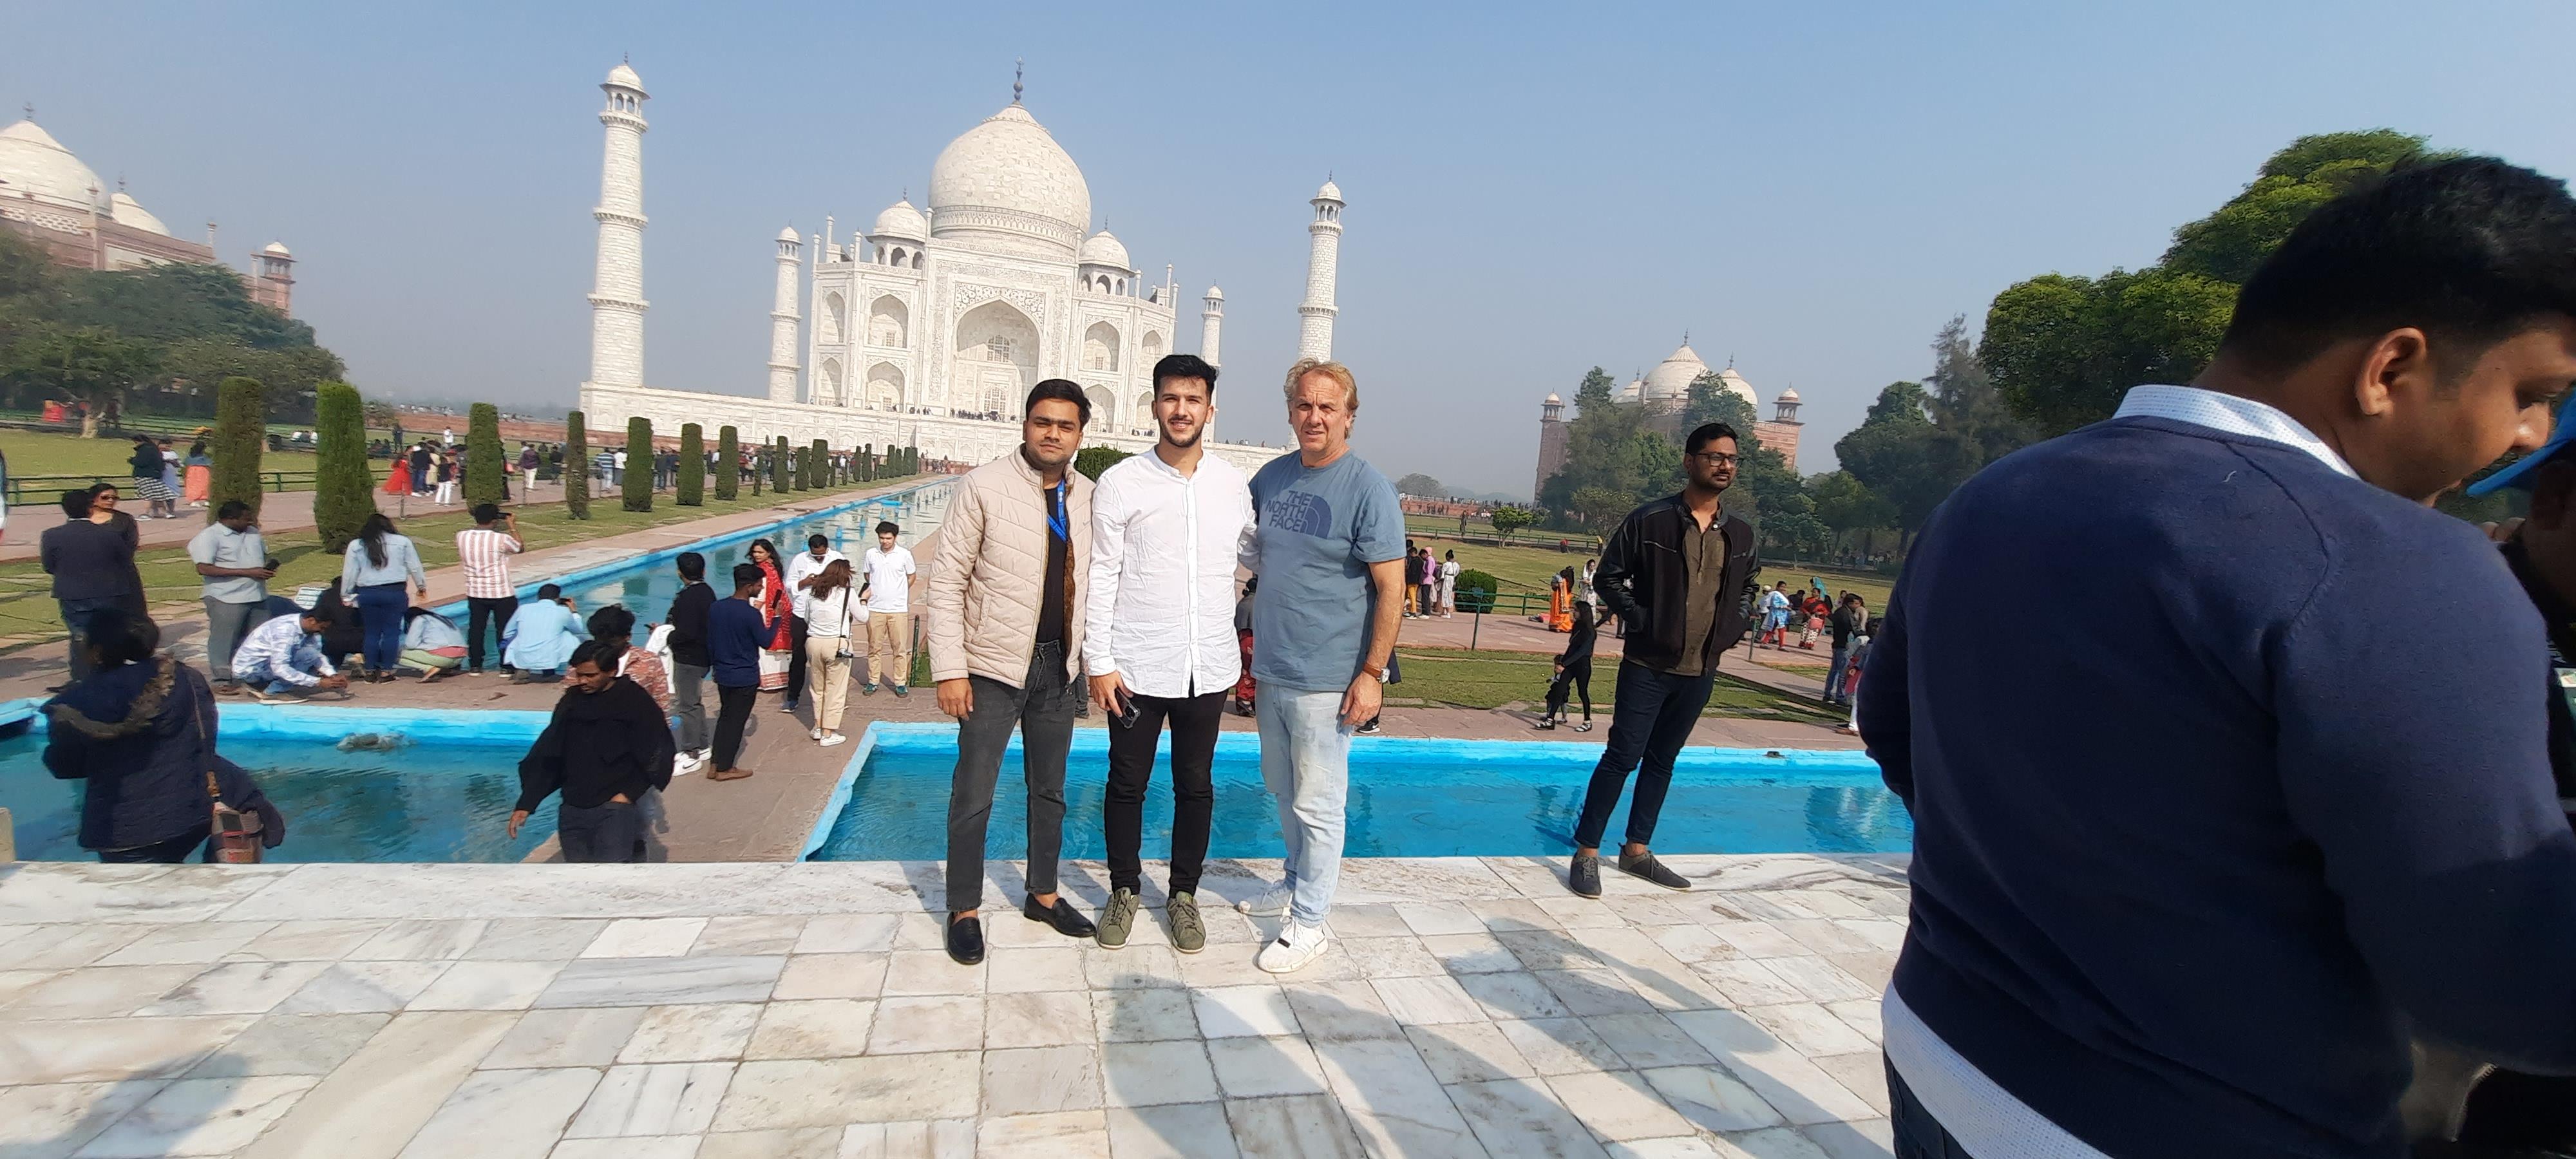 Excursion-a-Taj-Mahal-y-Agra-en-coche-desde-Delhi-2